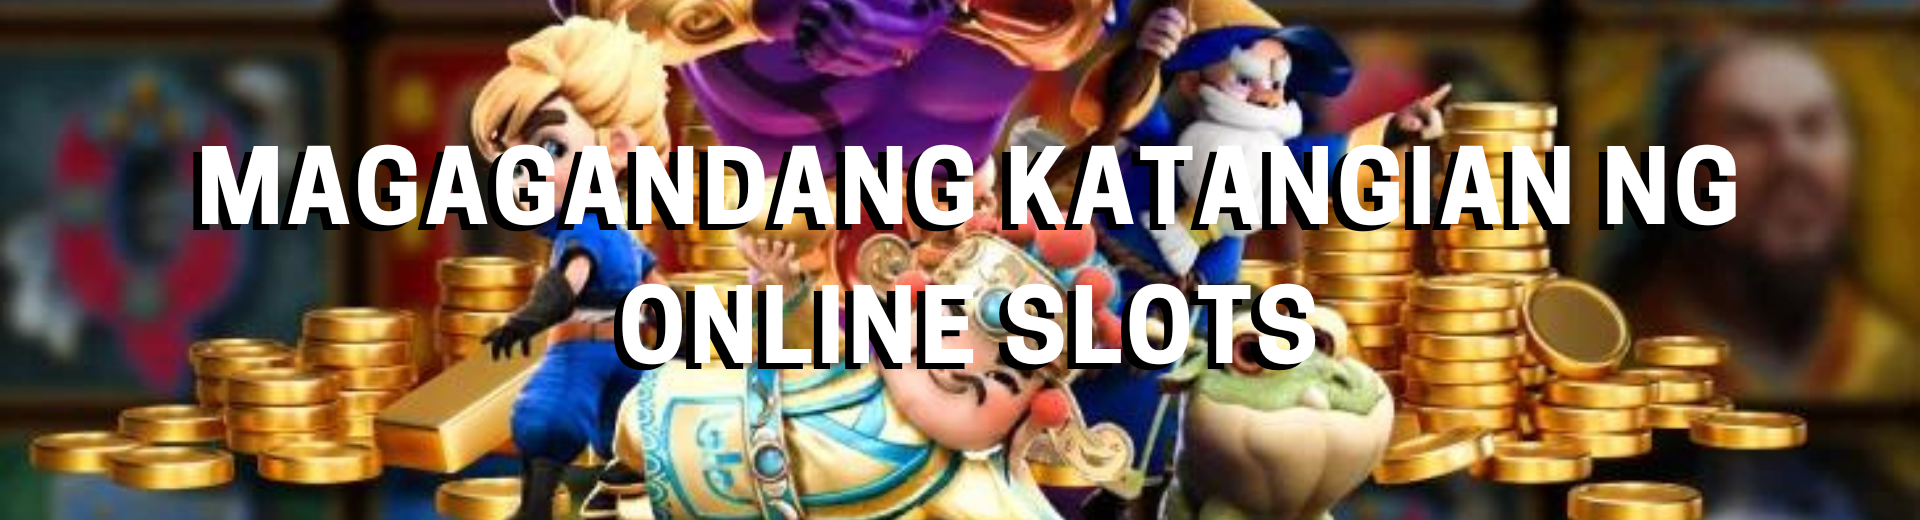 Magagandang katangian ng Online Slots | OKBet